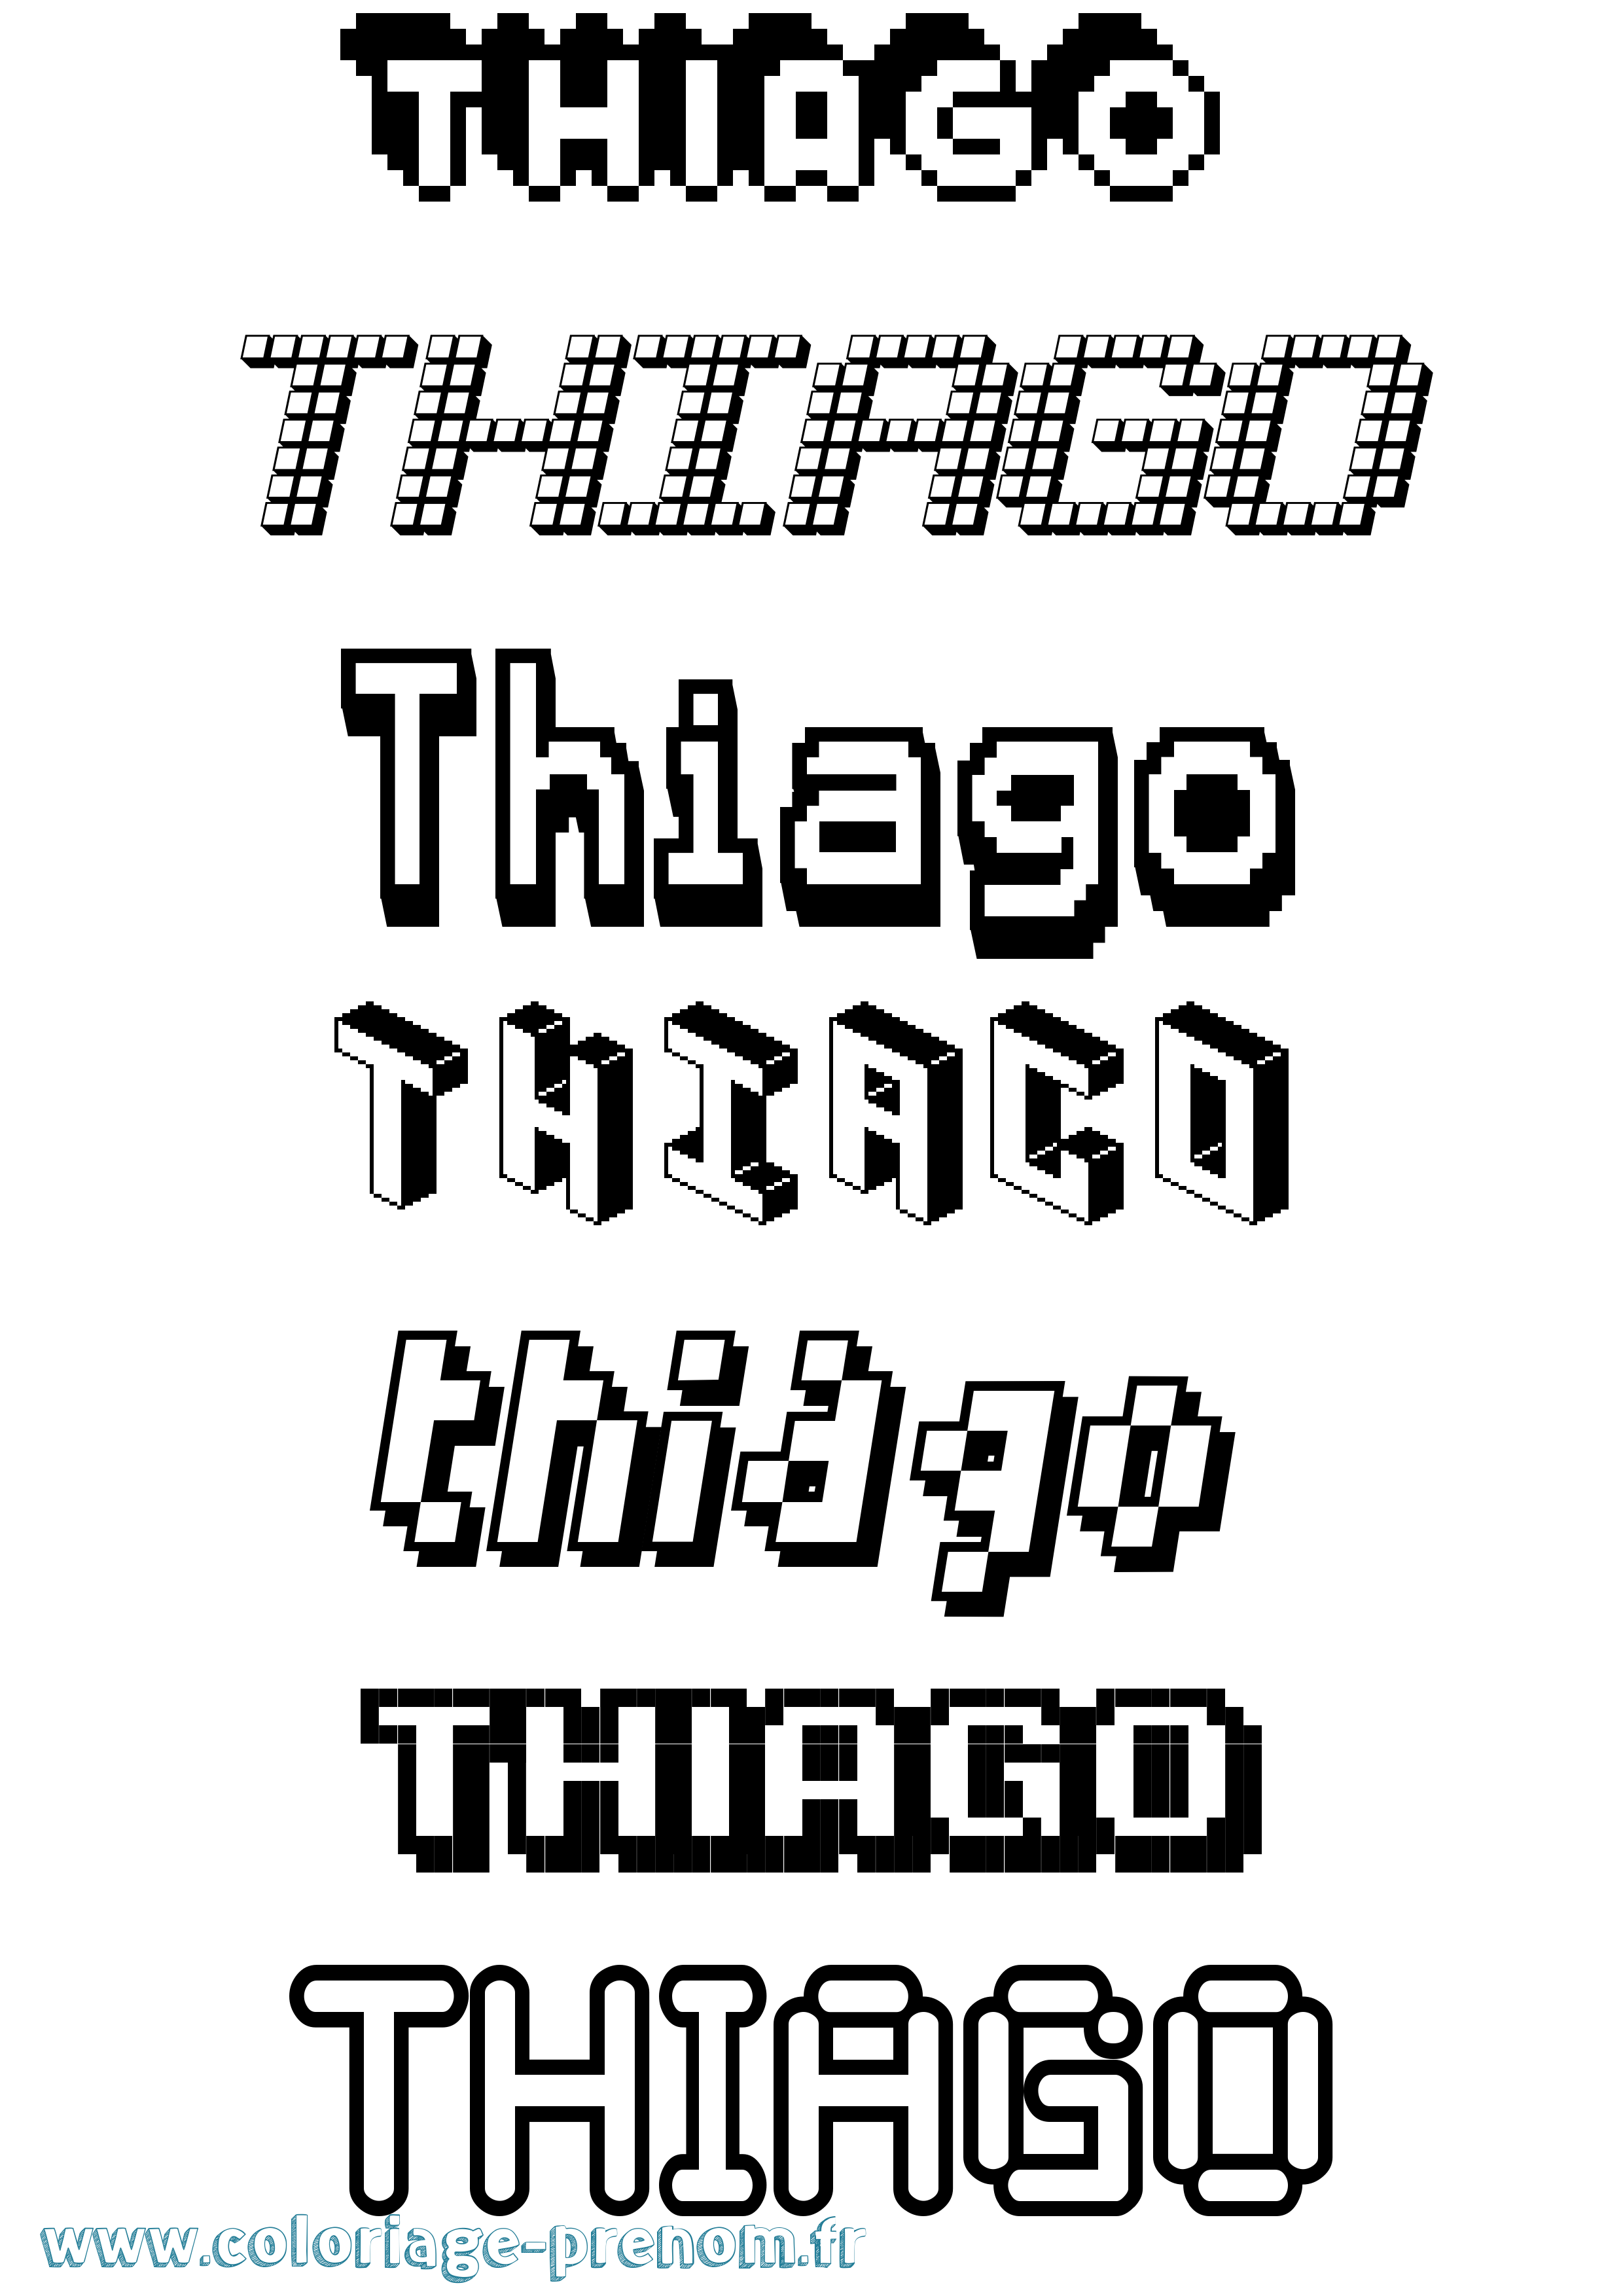 Coloriage prénom Thiago